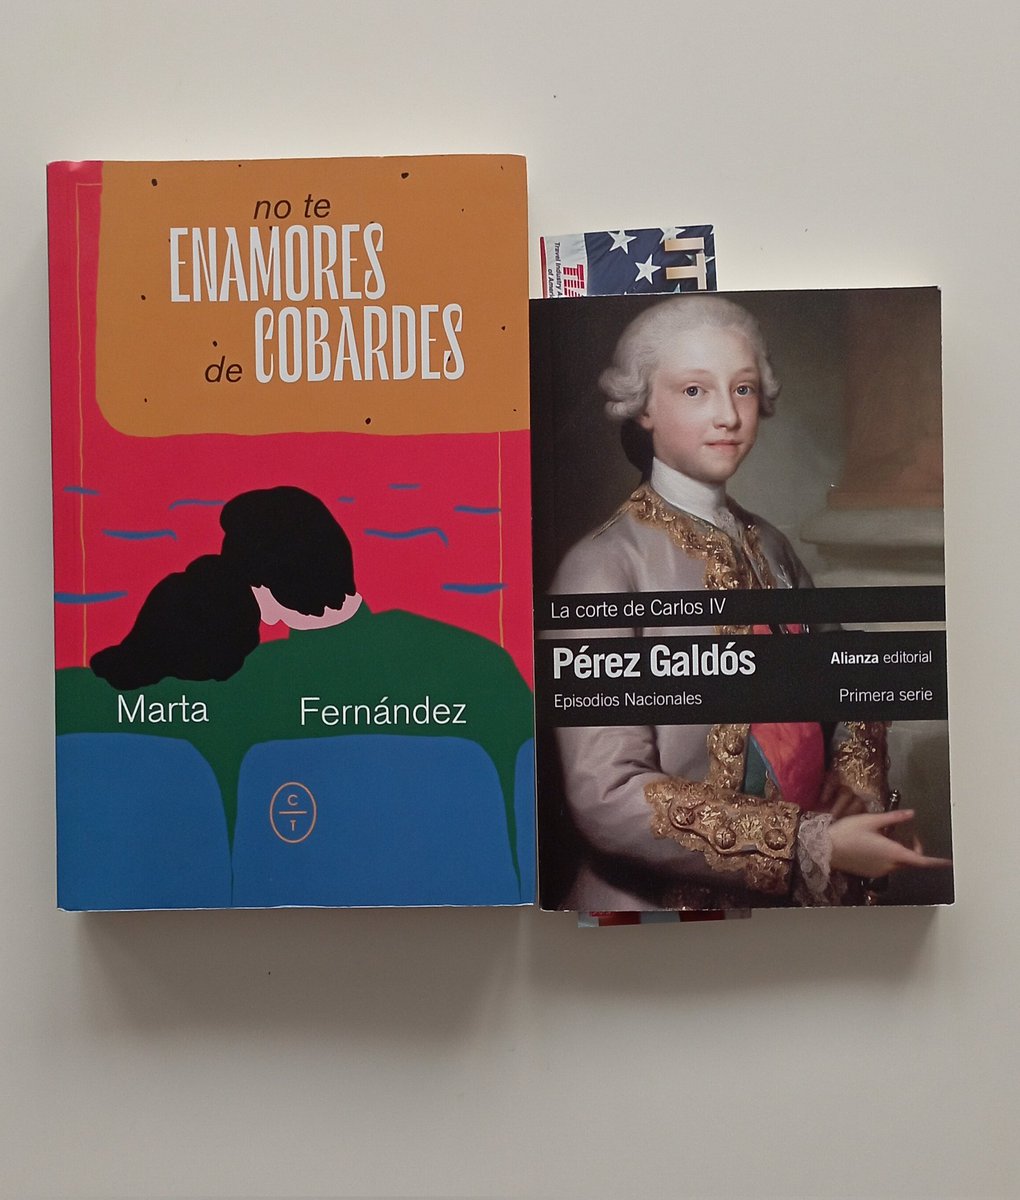 Gracias, @mrtfernandez. Hola, Benito Pérez Galdós. #MisLibros #literatura